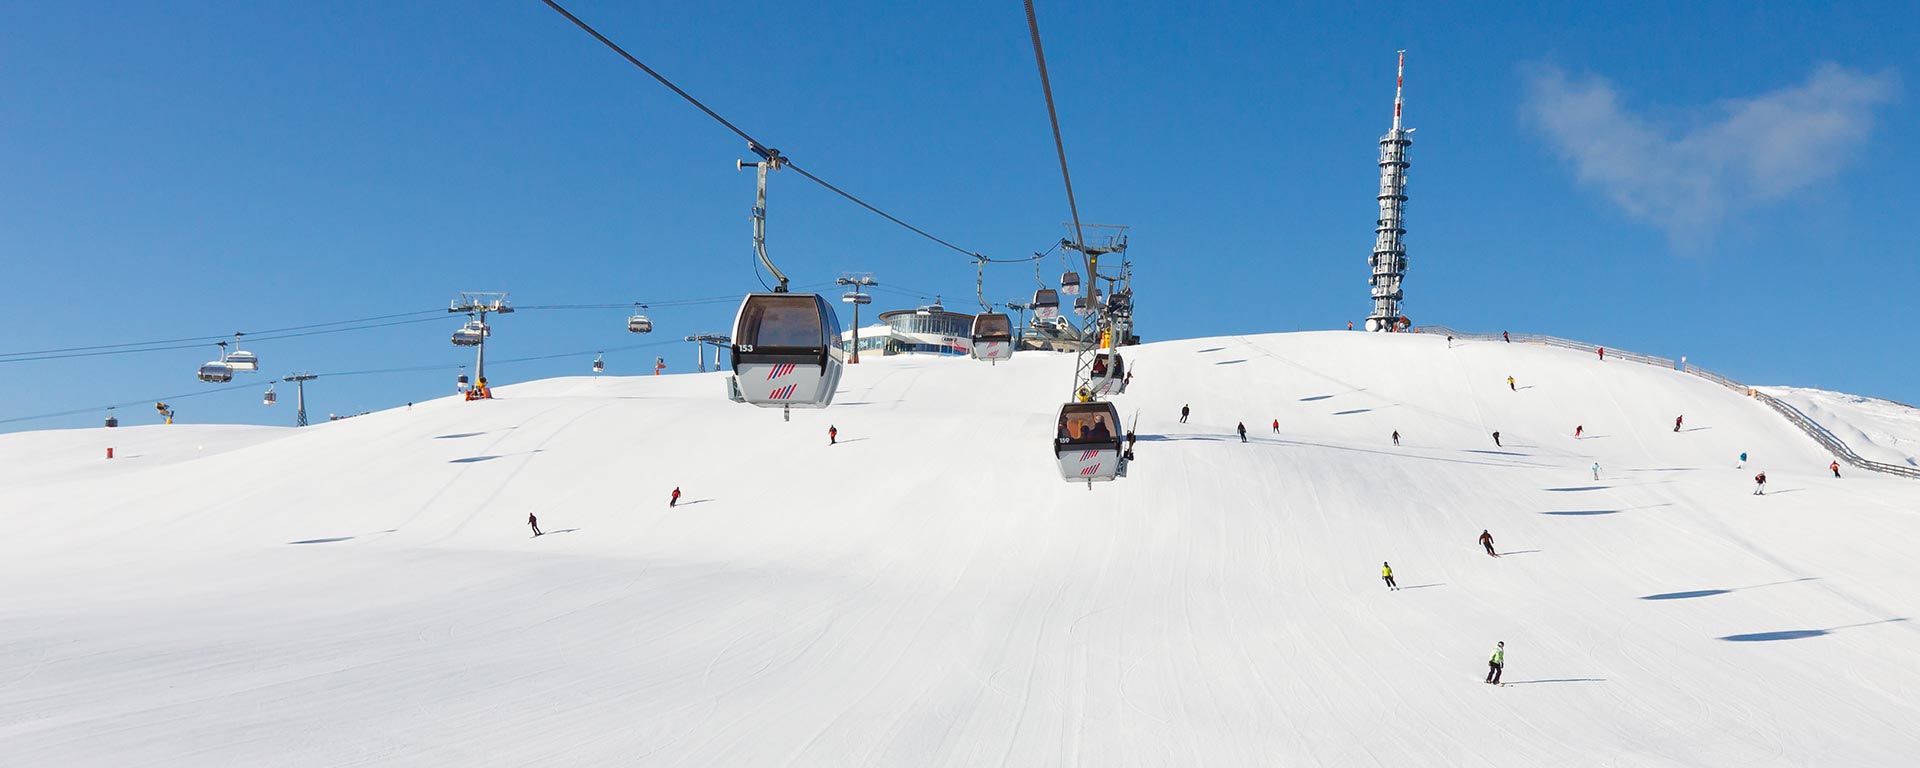 the ski lift at Plan de Korones over the white slopes